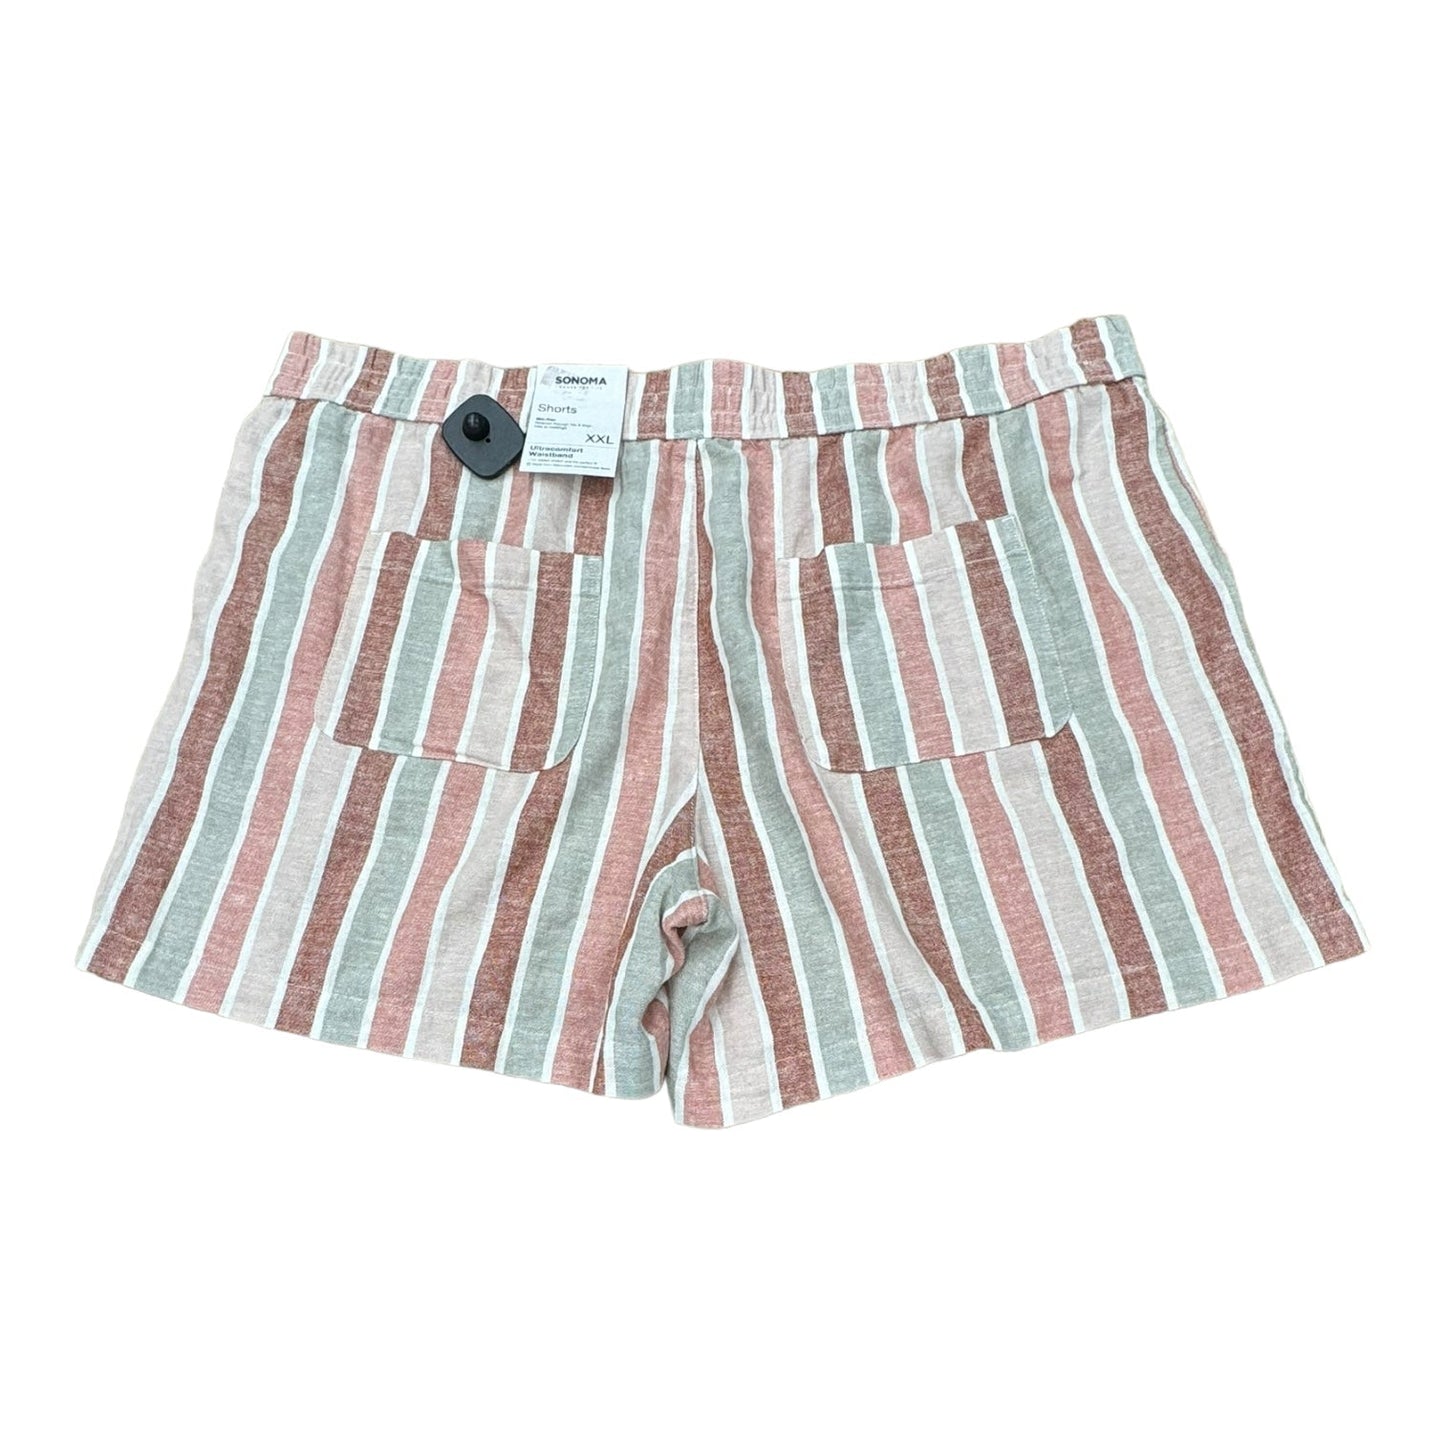 Shorts By Sonoma  Size: Xxl